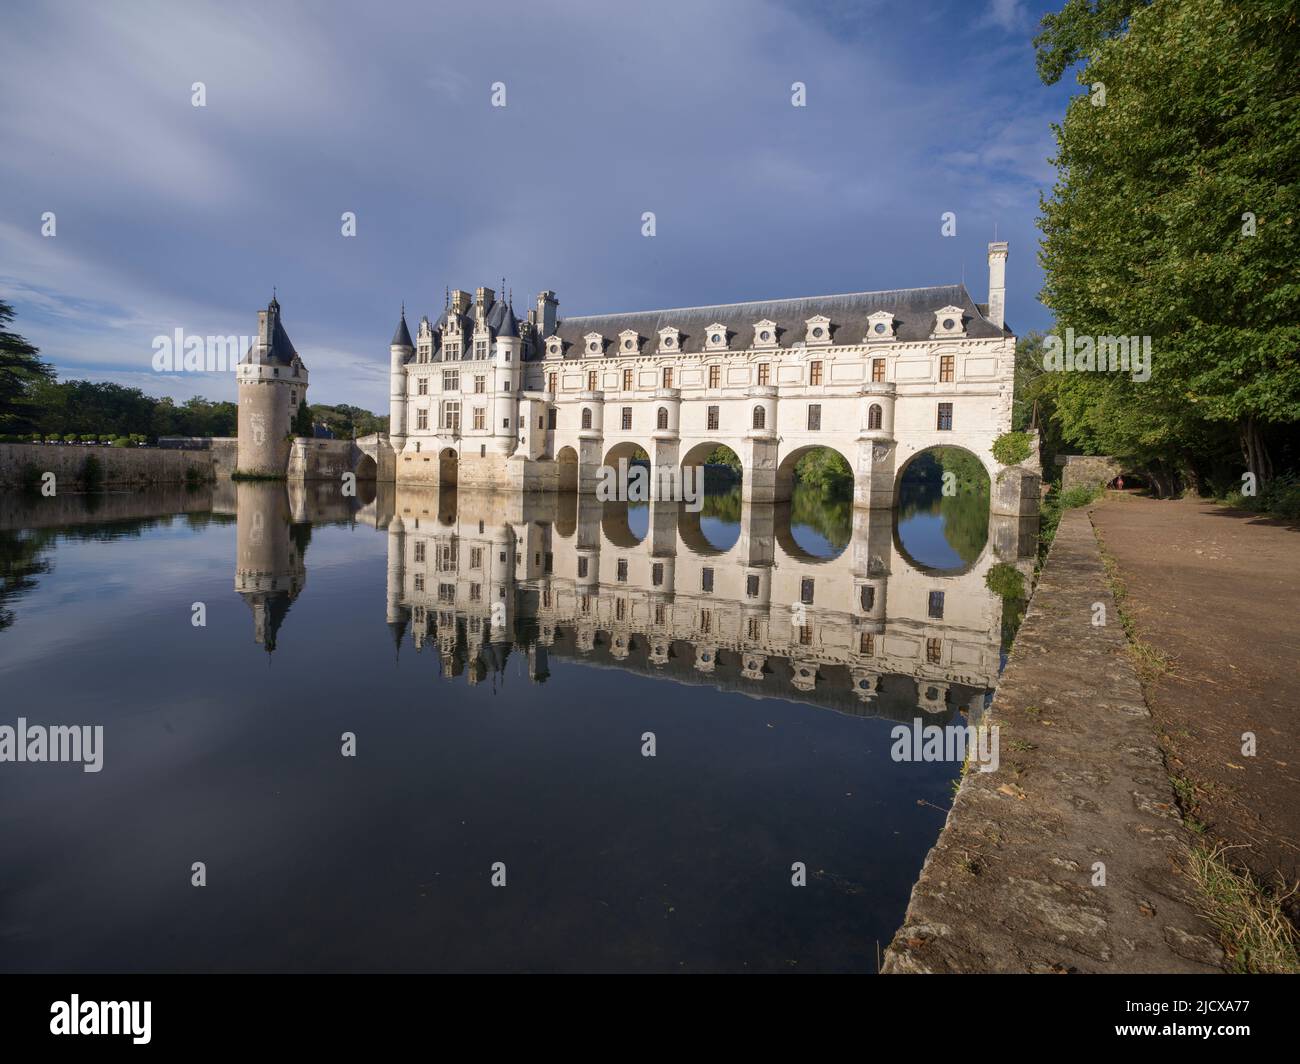 Castello di Chenonceau riflesso nell'acqua, patrimonio dell'umanità dell'UNESCO, Chenonceau, Indre-et-Loire, Centro-Val de Loire, Francia, Europa Foto Stock